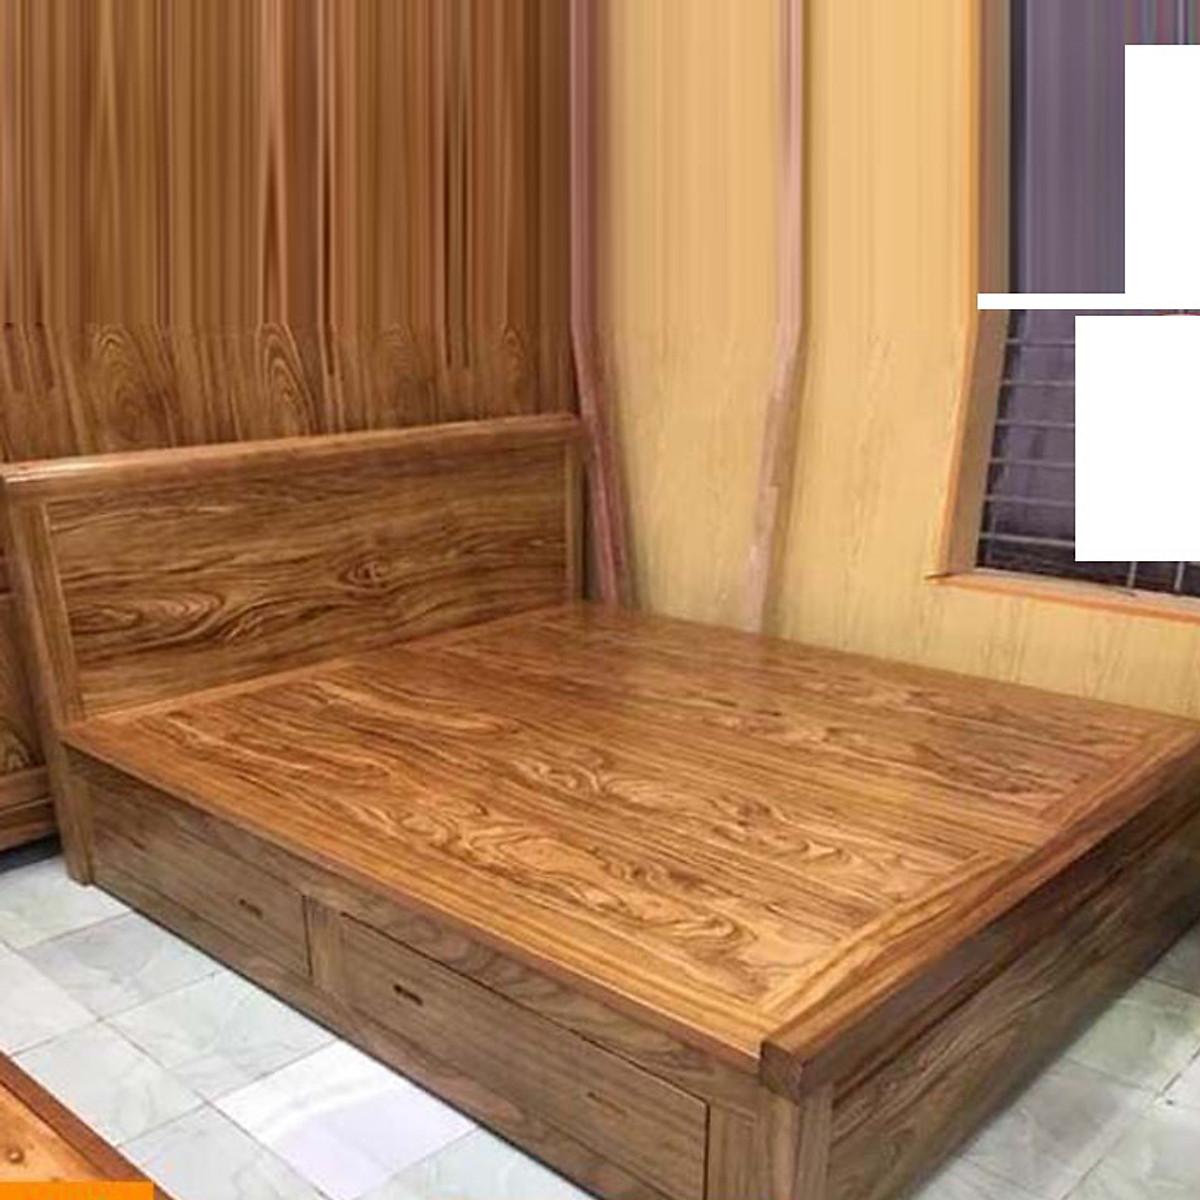 Giường ngủ gỗ hương xám 1m8 x 2m có hộc kéo 2 ngăn dưới Giường Ngủ Gỗ Hương Xám Ngăn Kéo Dạt Phản